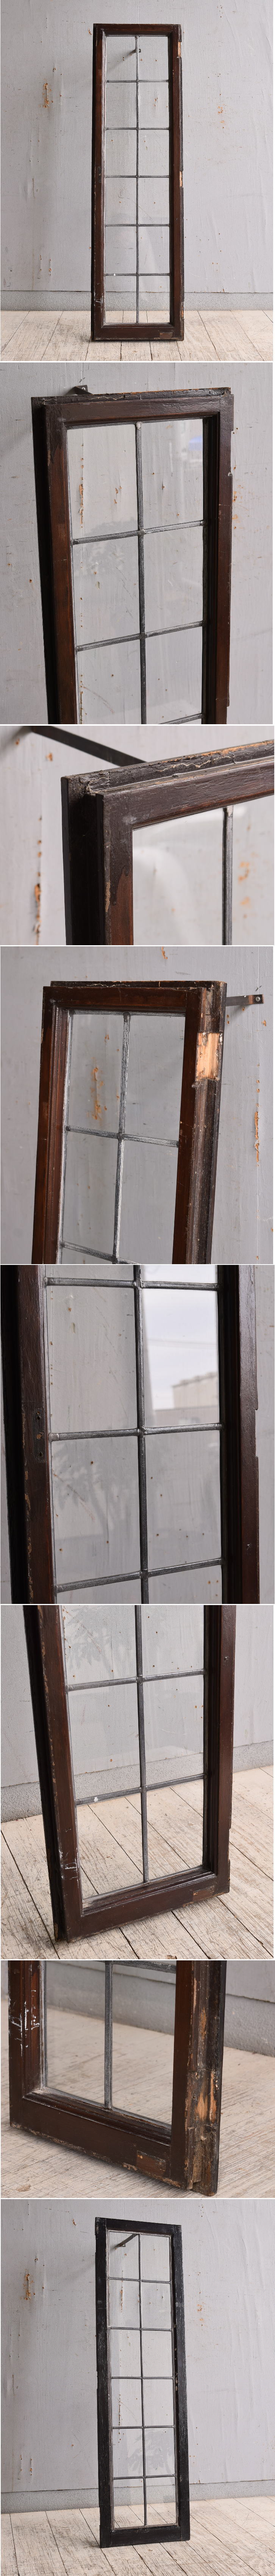 イギリス アンティーク 窓 無色透明 9886